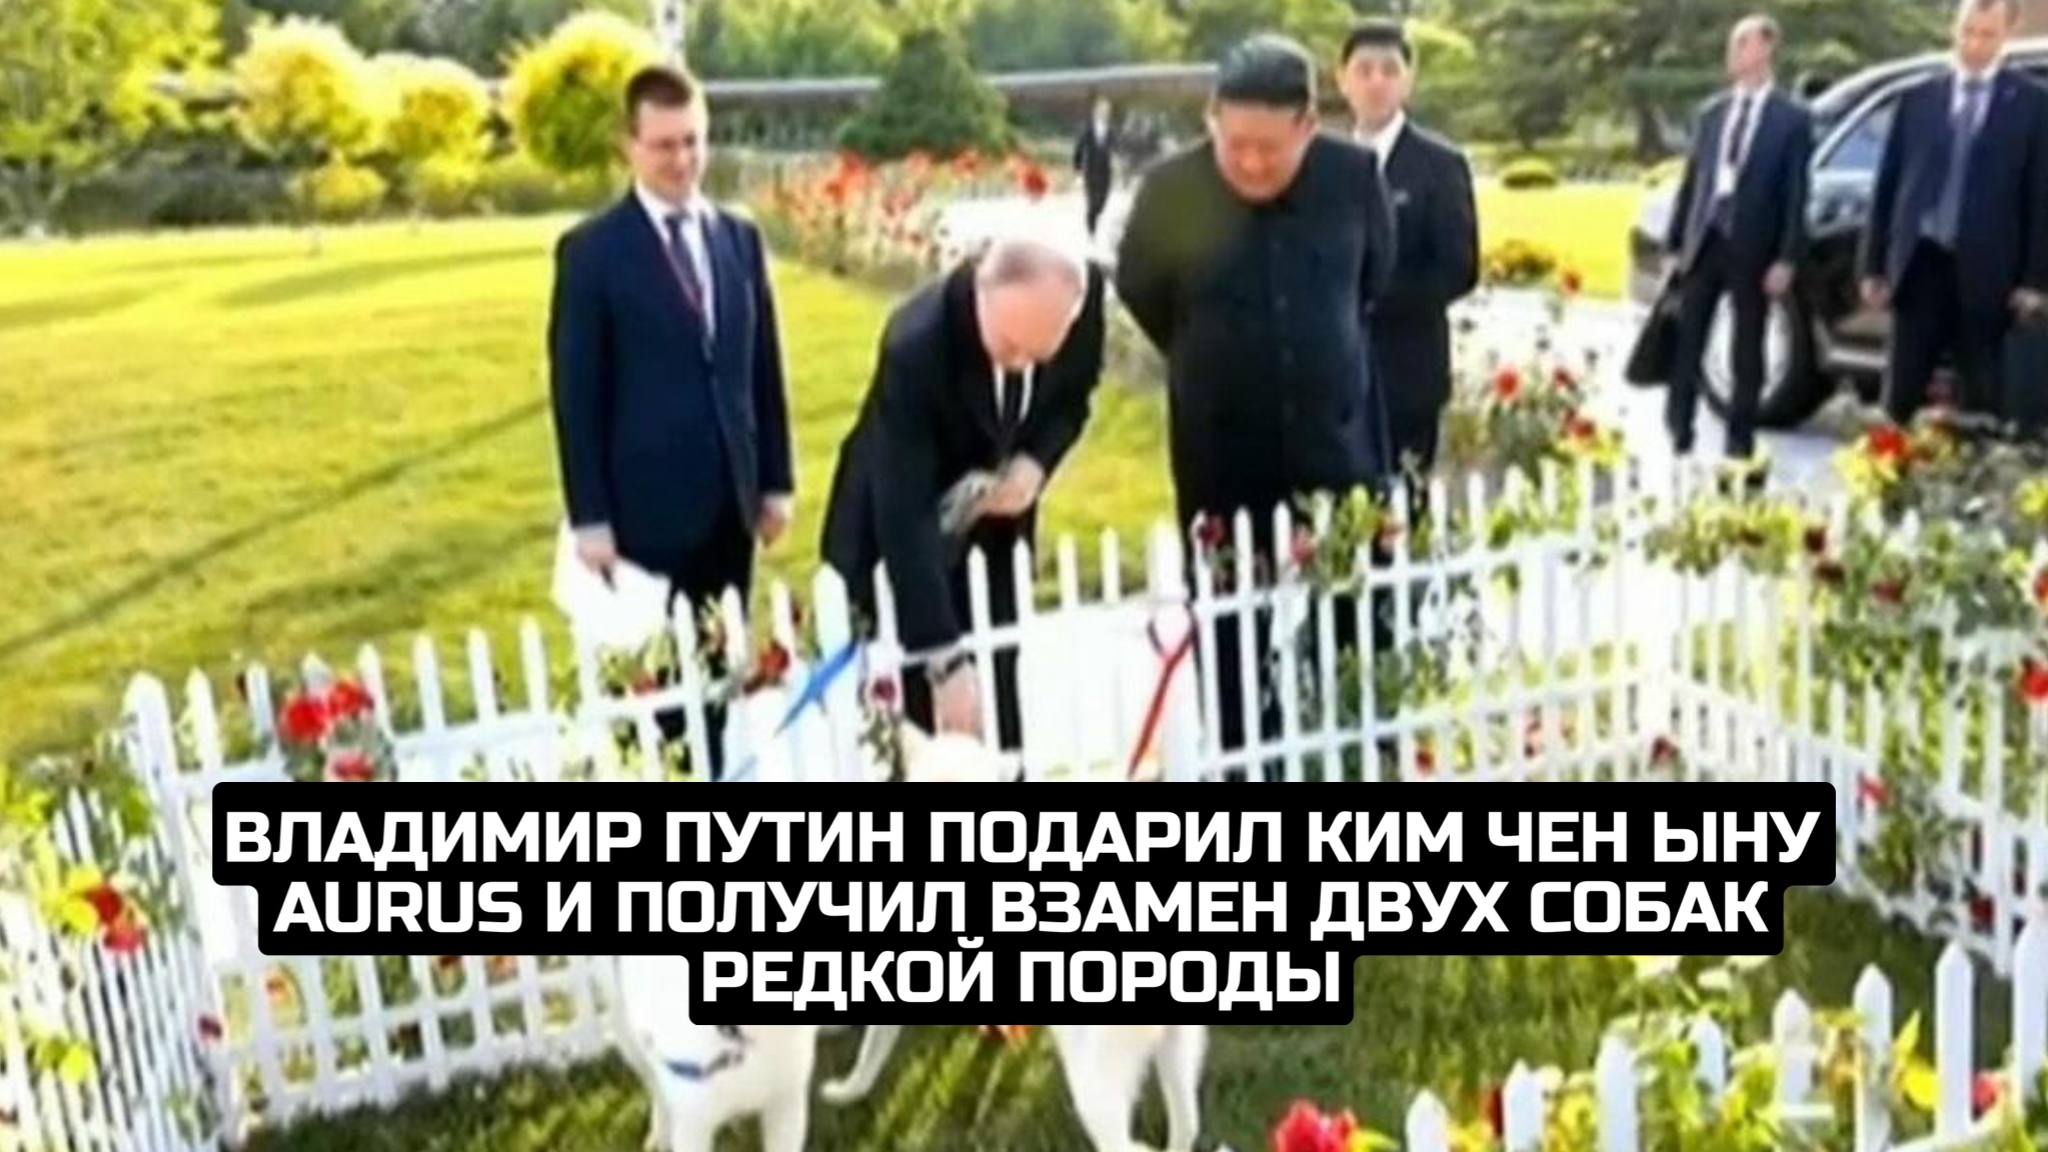 Владимир Путин подарил Ким Чен Ыну Aurus и получил взамен двух собак редкой породы